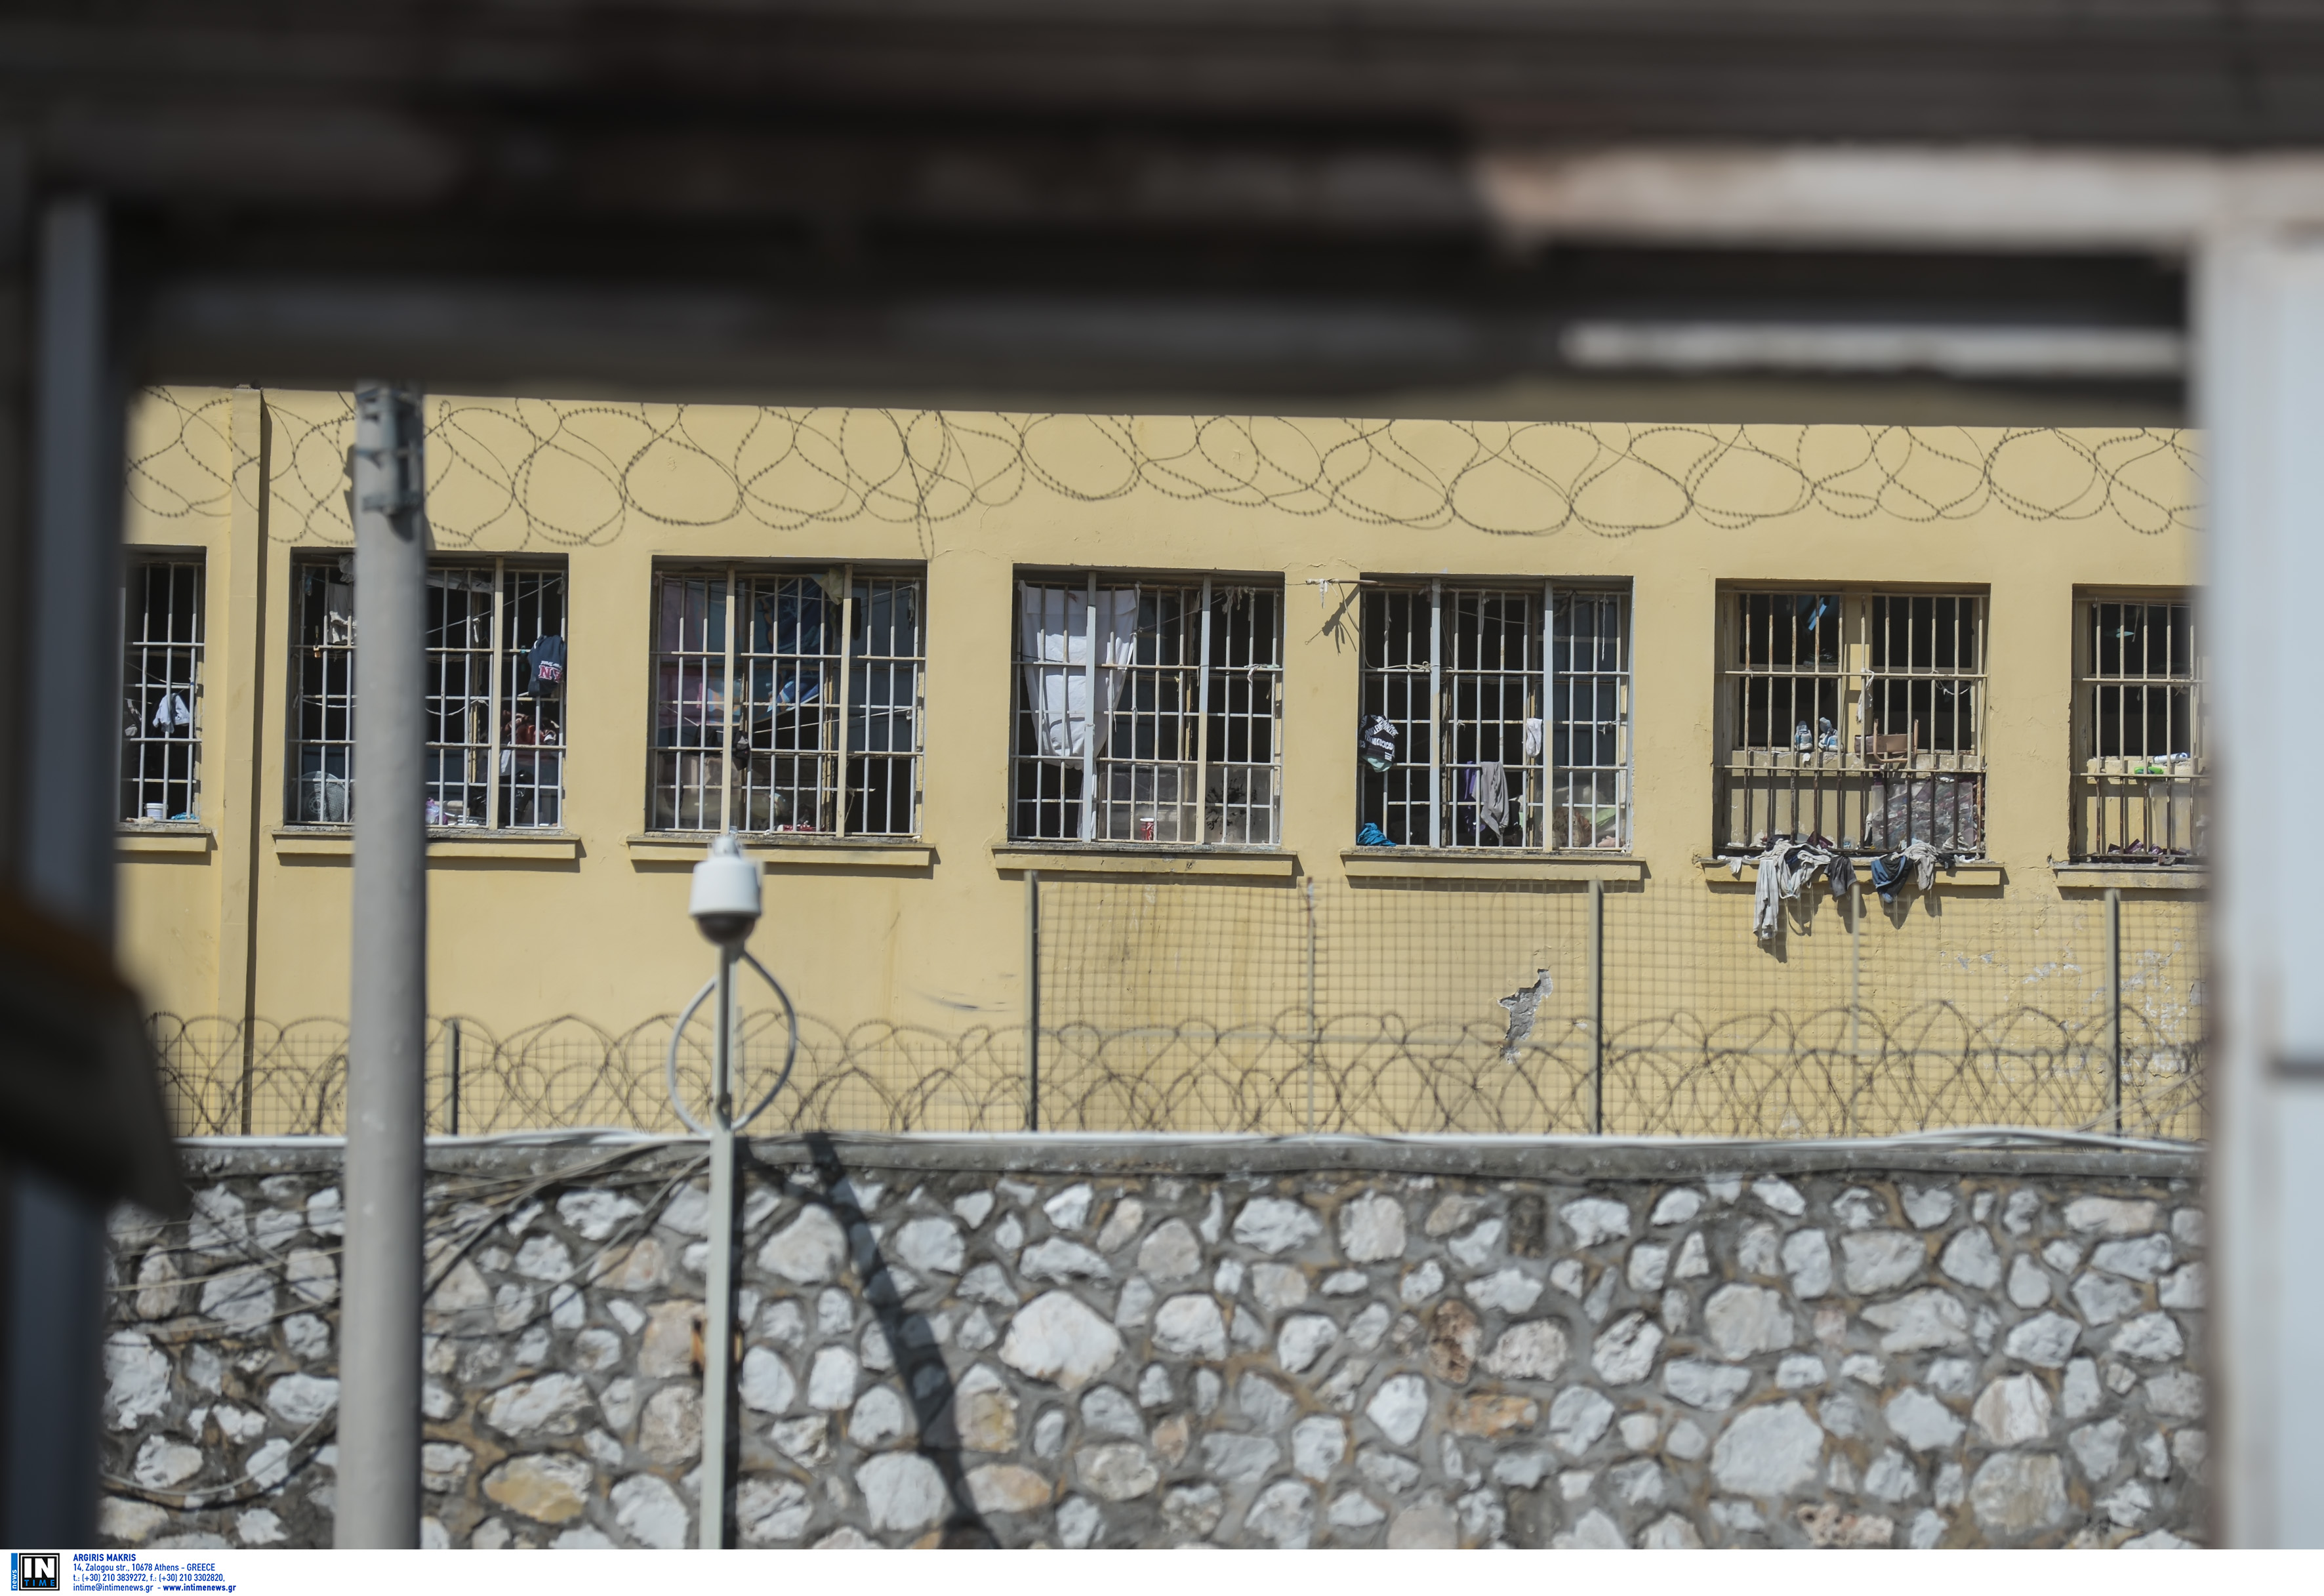 Βόλος: Κρούσματα ψώρας στις φυλακές! Ανησυχία εκπαιδευτικών που κάνουν μαθήματα σε κρατούμενους